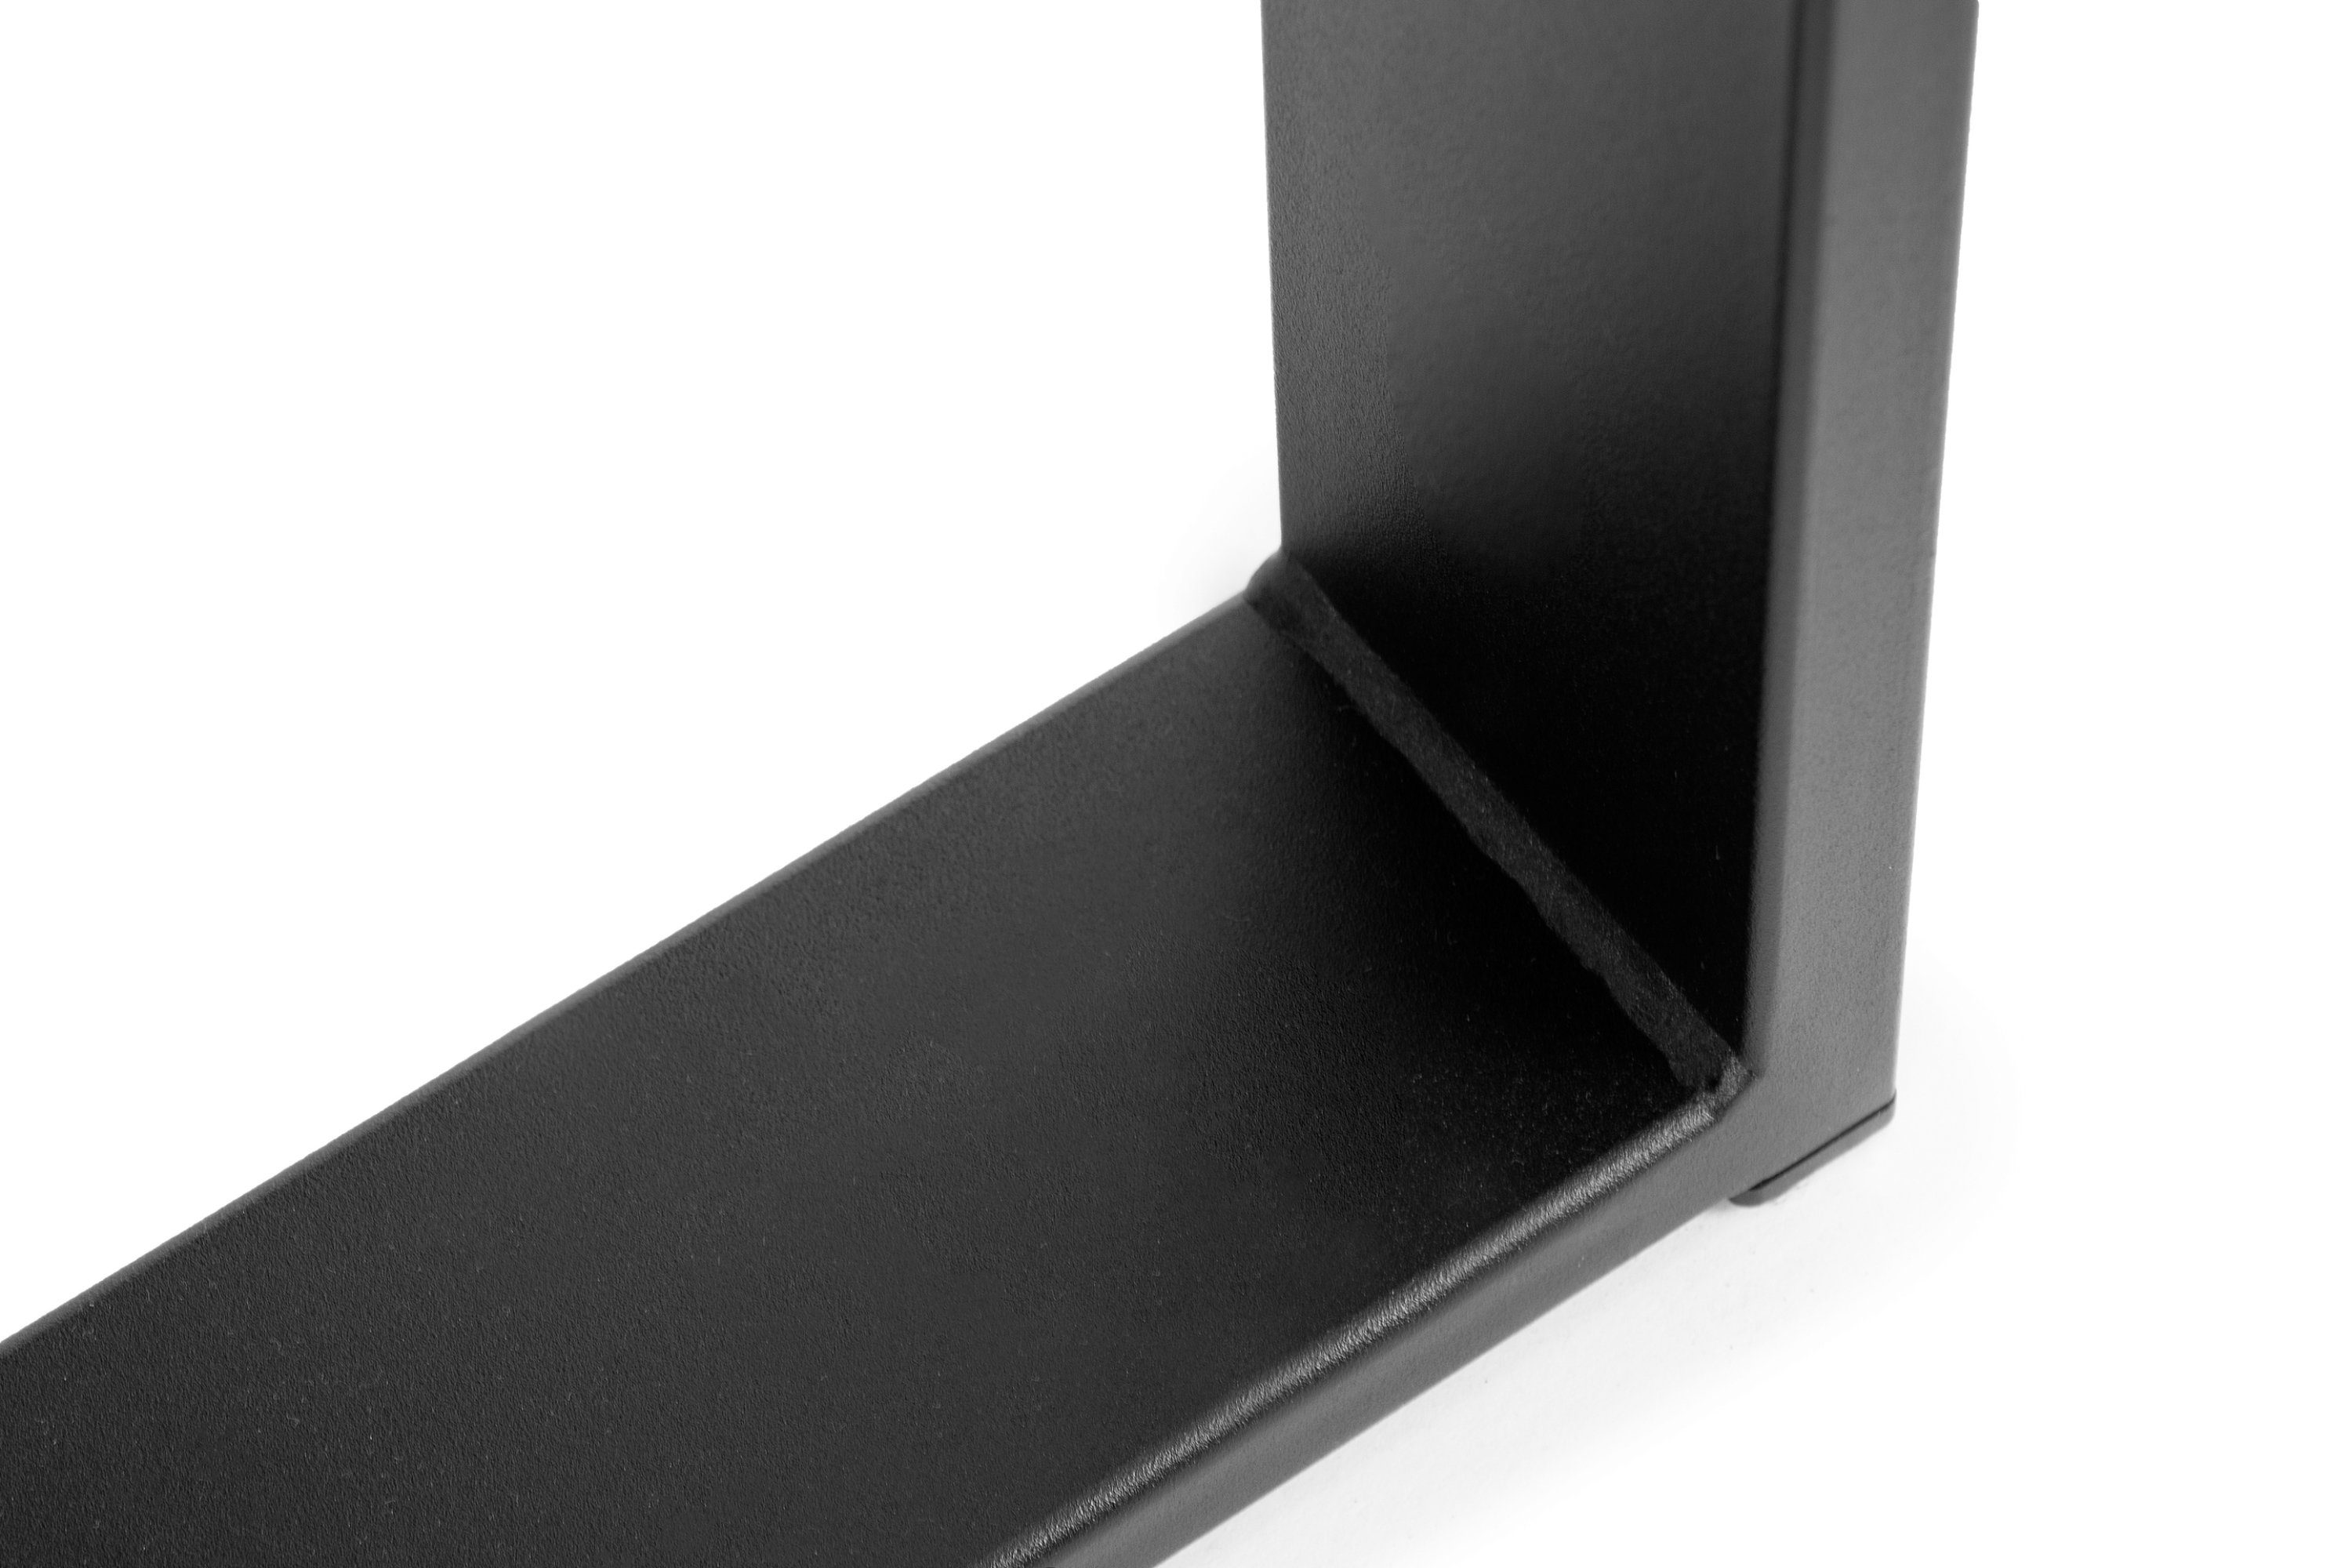 Konsimo Esstisch CETO Küchentisch Walnuss rechteckig, | bis Walnuss Esszimmertisch ausziehbar Loft-Stil 150x80cm, dunkel dunkel 190cm